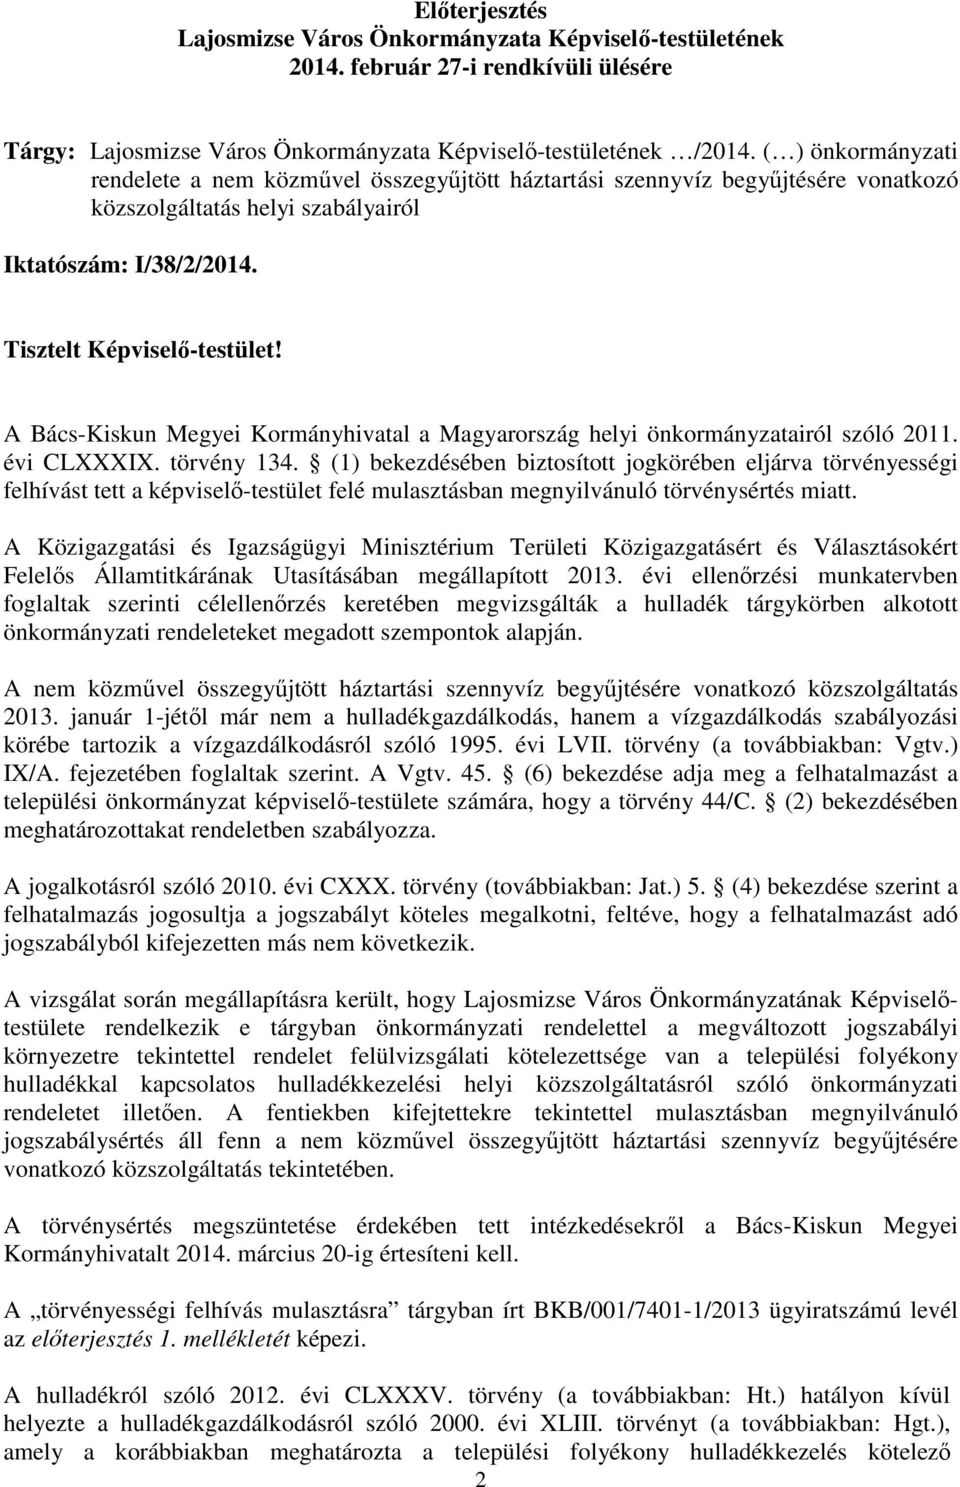 A Bács-Kiskun Megyei Kormányhivatal a Magyarország helyi önkormányzatairól szóló 2011. évi CLXXXIX. törvény 134.